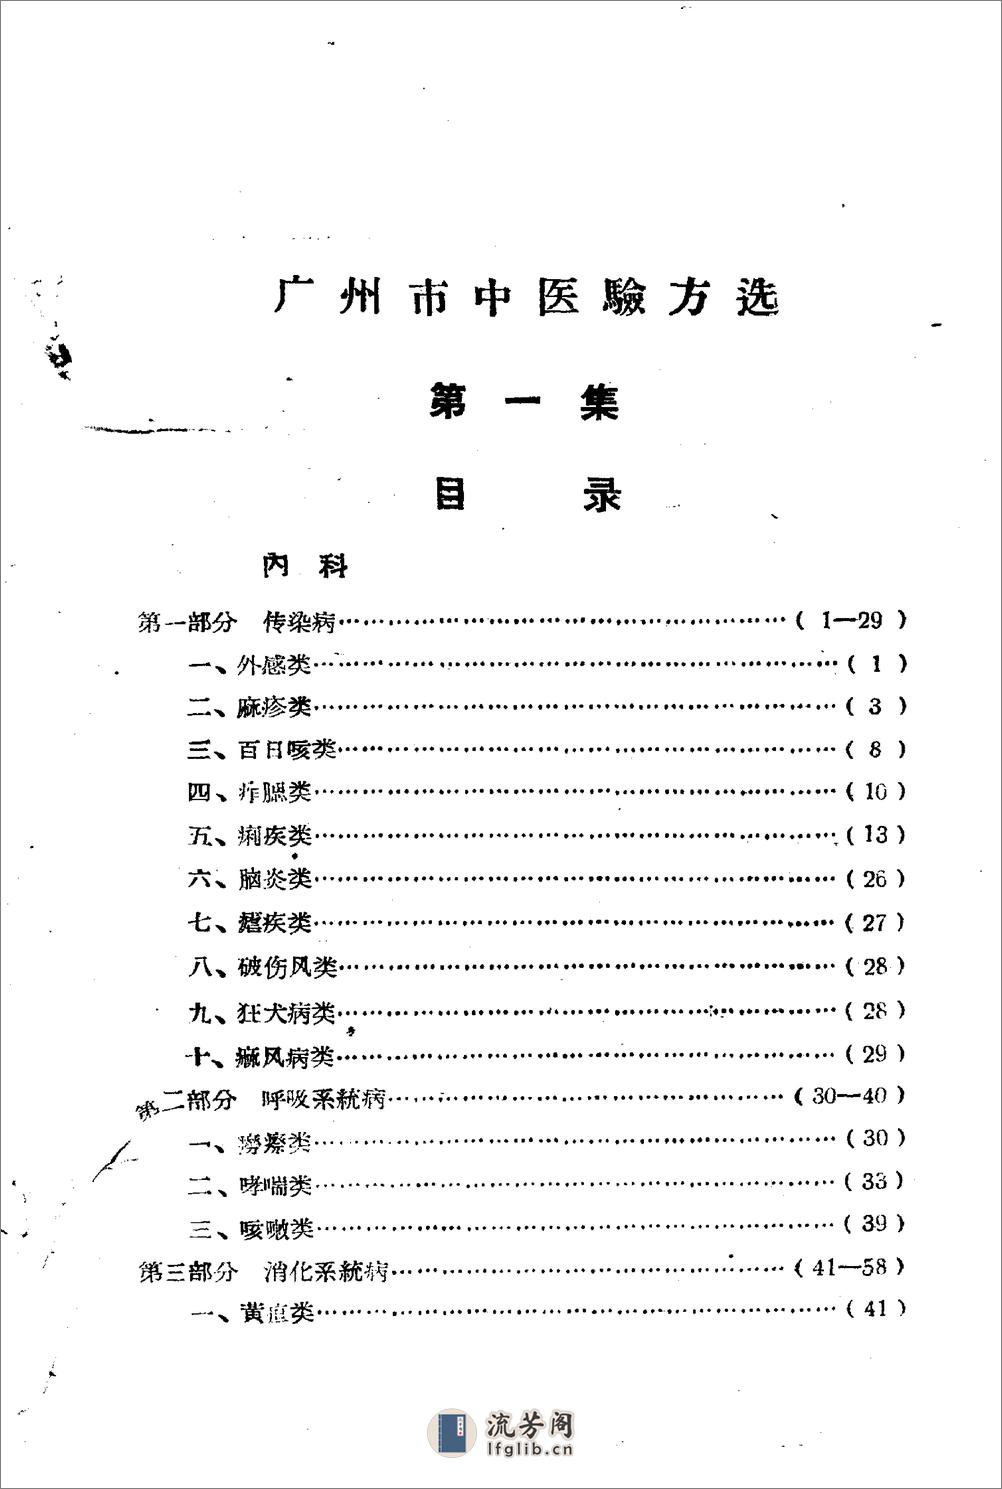 广州市1959中医验方选 第一集_广州市卫生局编 - 第3页预览图